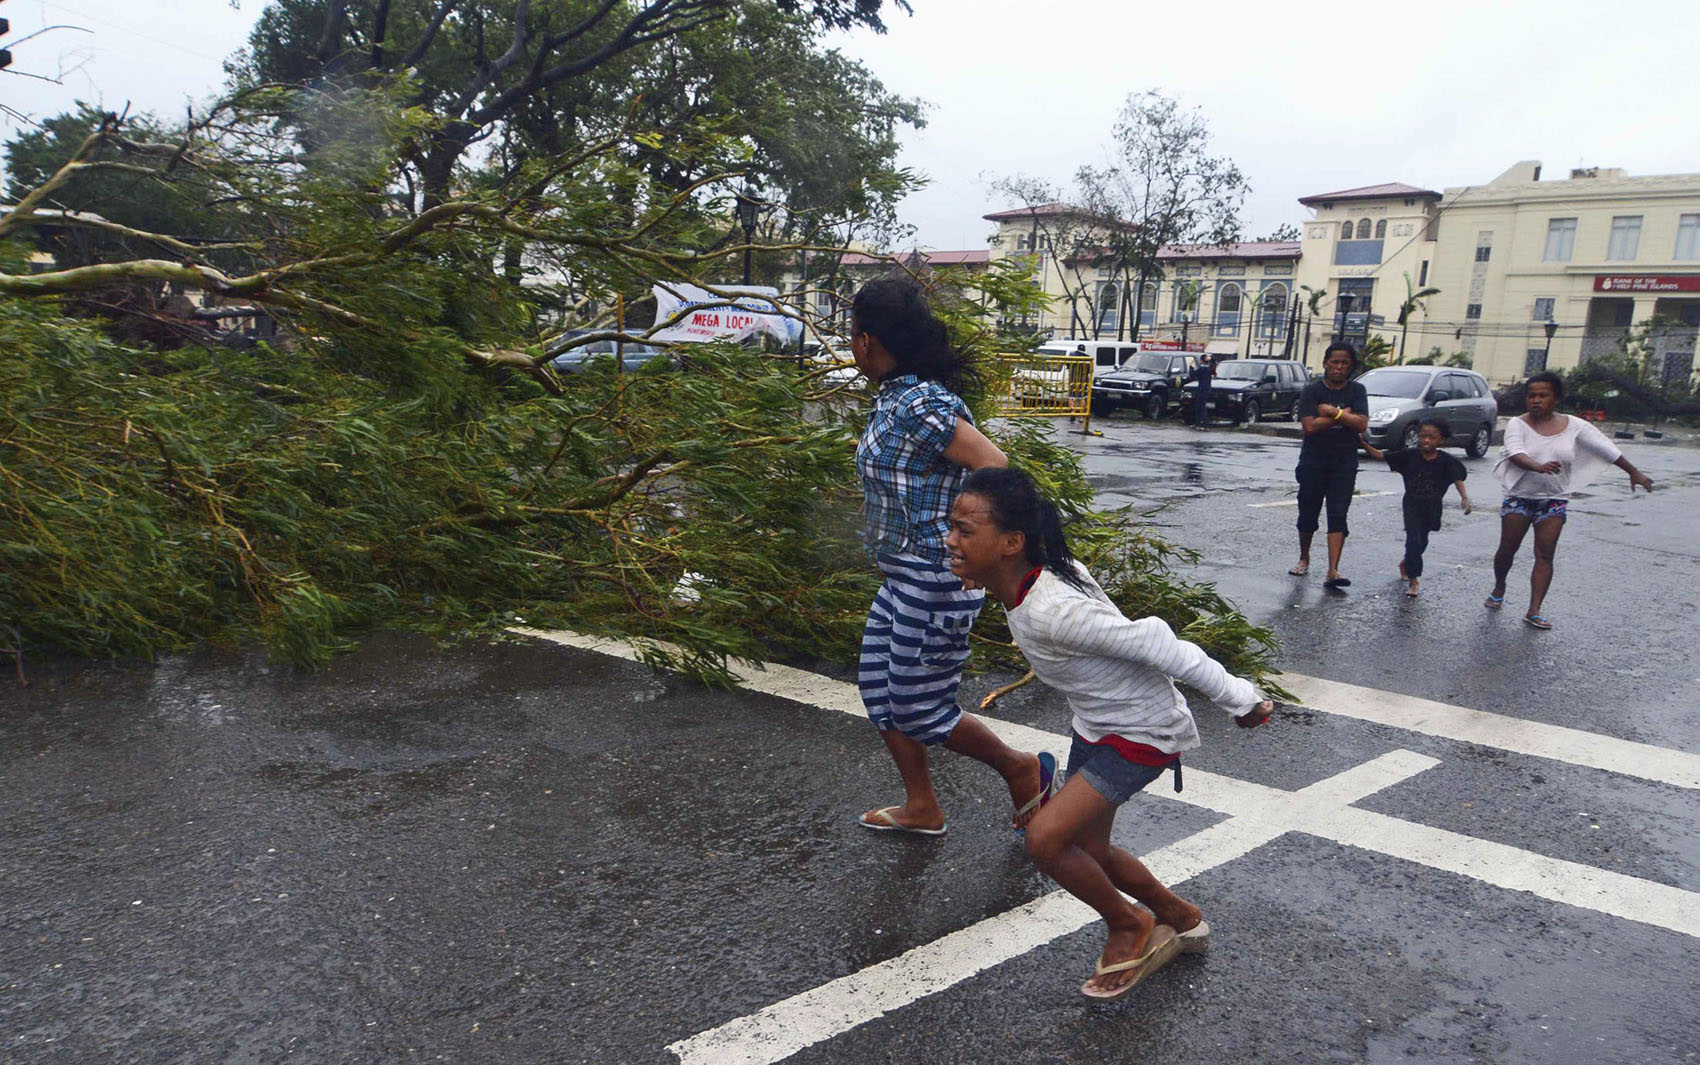 8/11 - Moradores correm próximo de uma árvore caída durante fortes ventos na passagem do tufão que atingiu a região central das Filipinas.